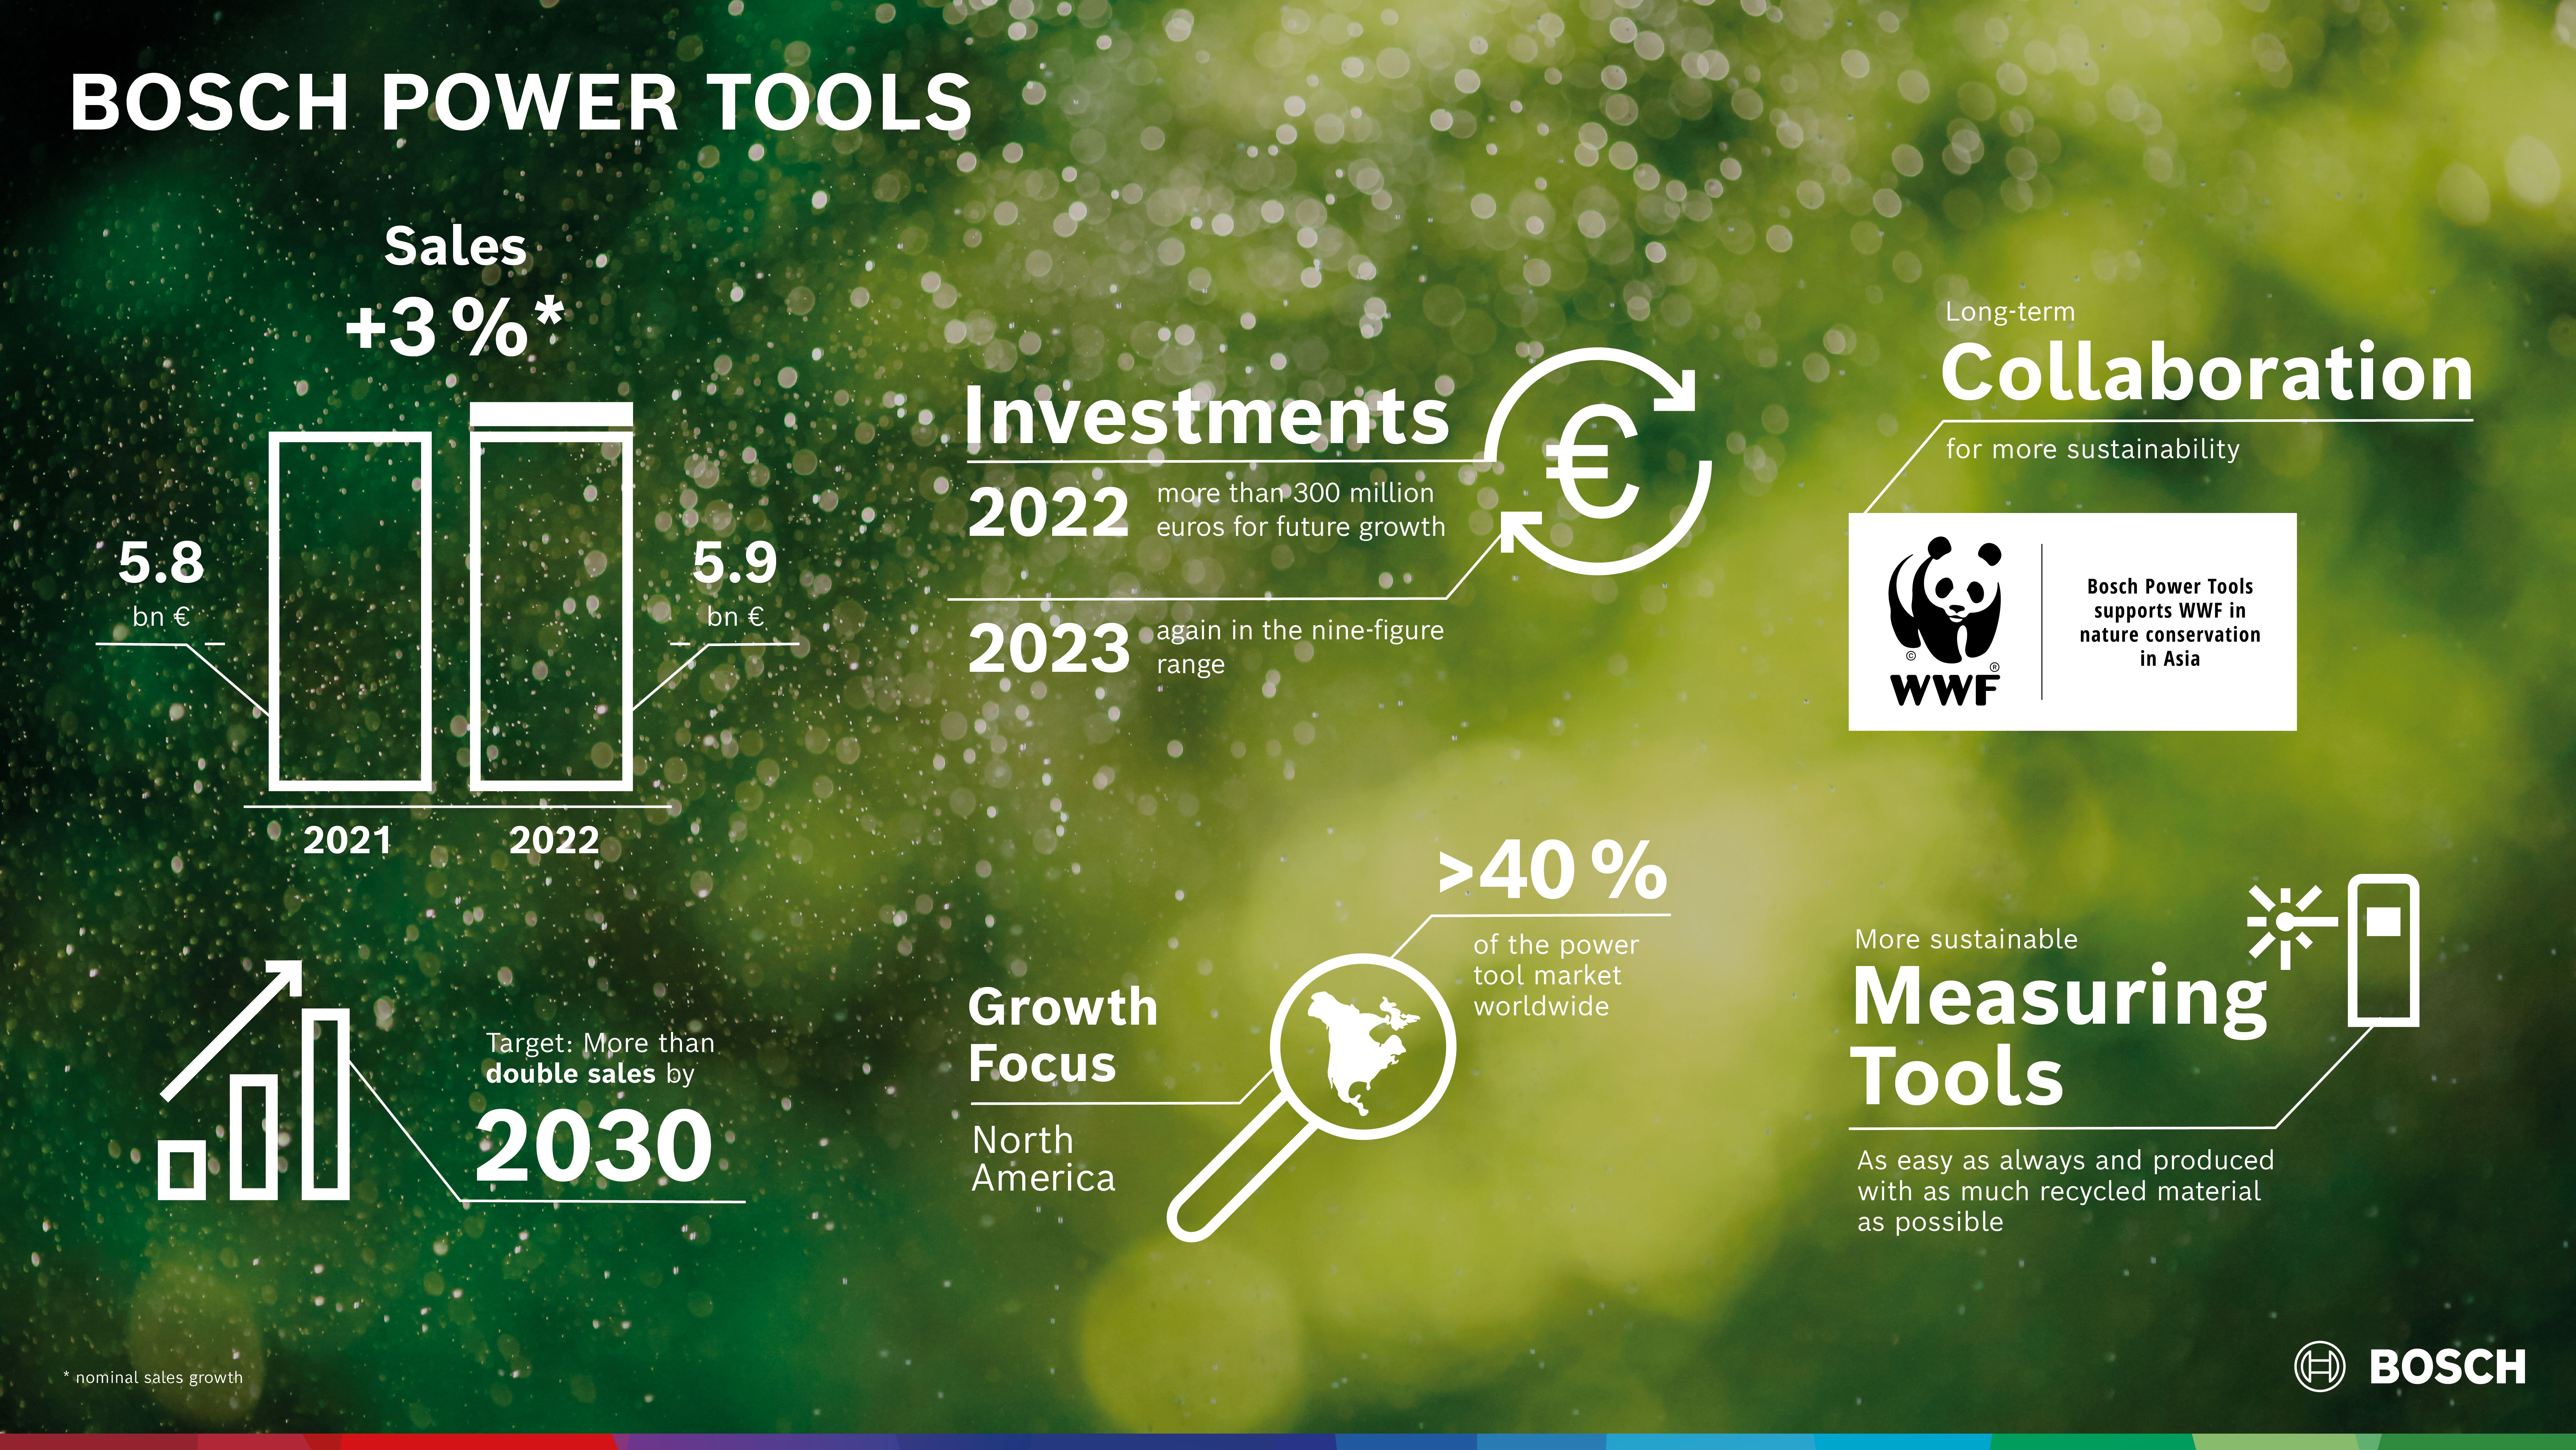 Crescita sostenibile: Bosch Power Tools punta a raddoppiare il fatturato entro il 2030